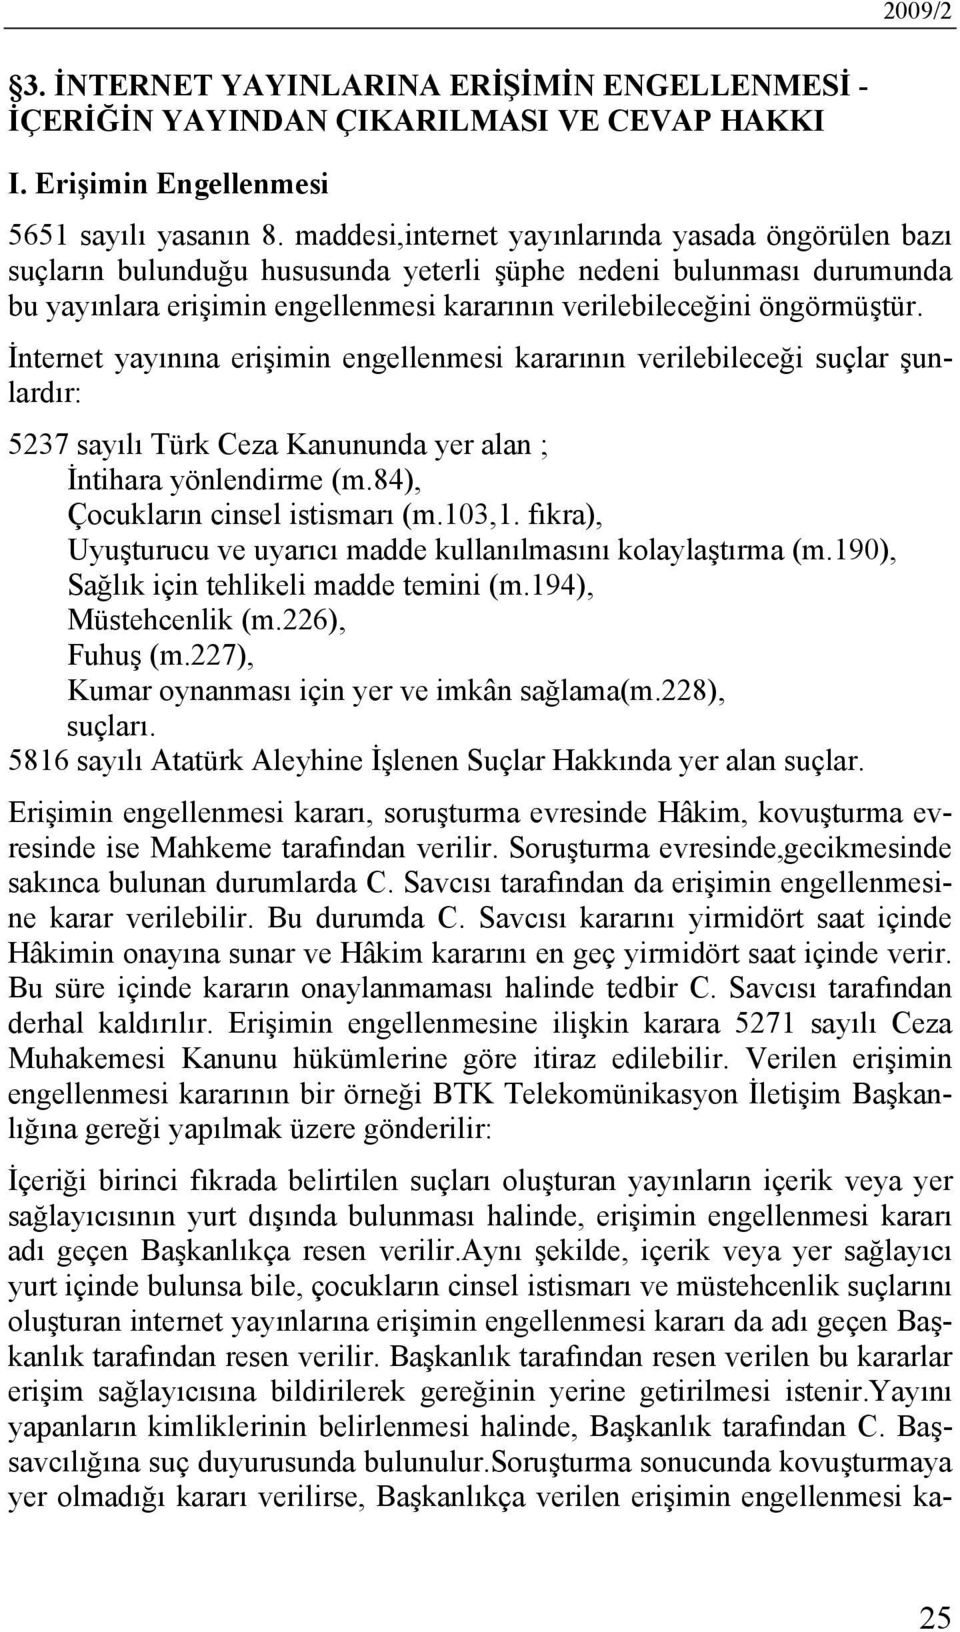 İnternet yayınına erişimin engellenmesi kararının verilebileceği suçlar şunlardır: 5237 sayılı Türk Ceza Kanununda yer alan ; İntihara yönlendirme (m.84), Çocukların cinsel istismarı (m.103,1.